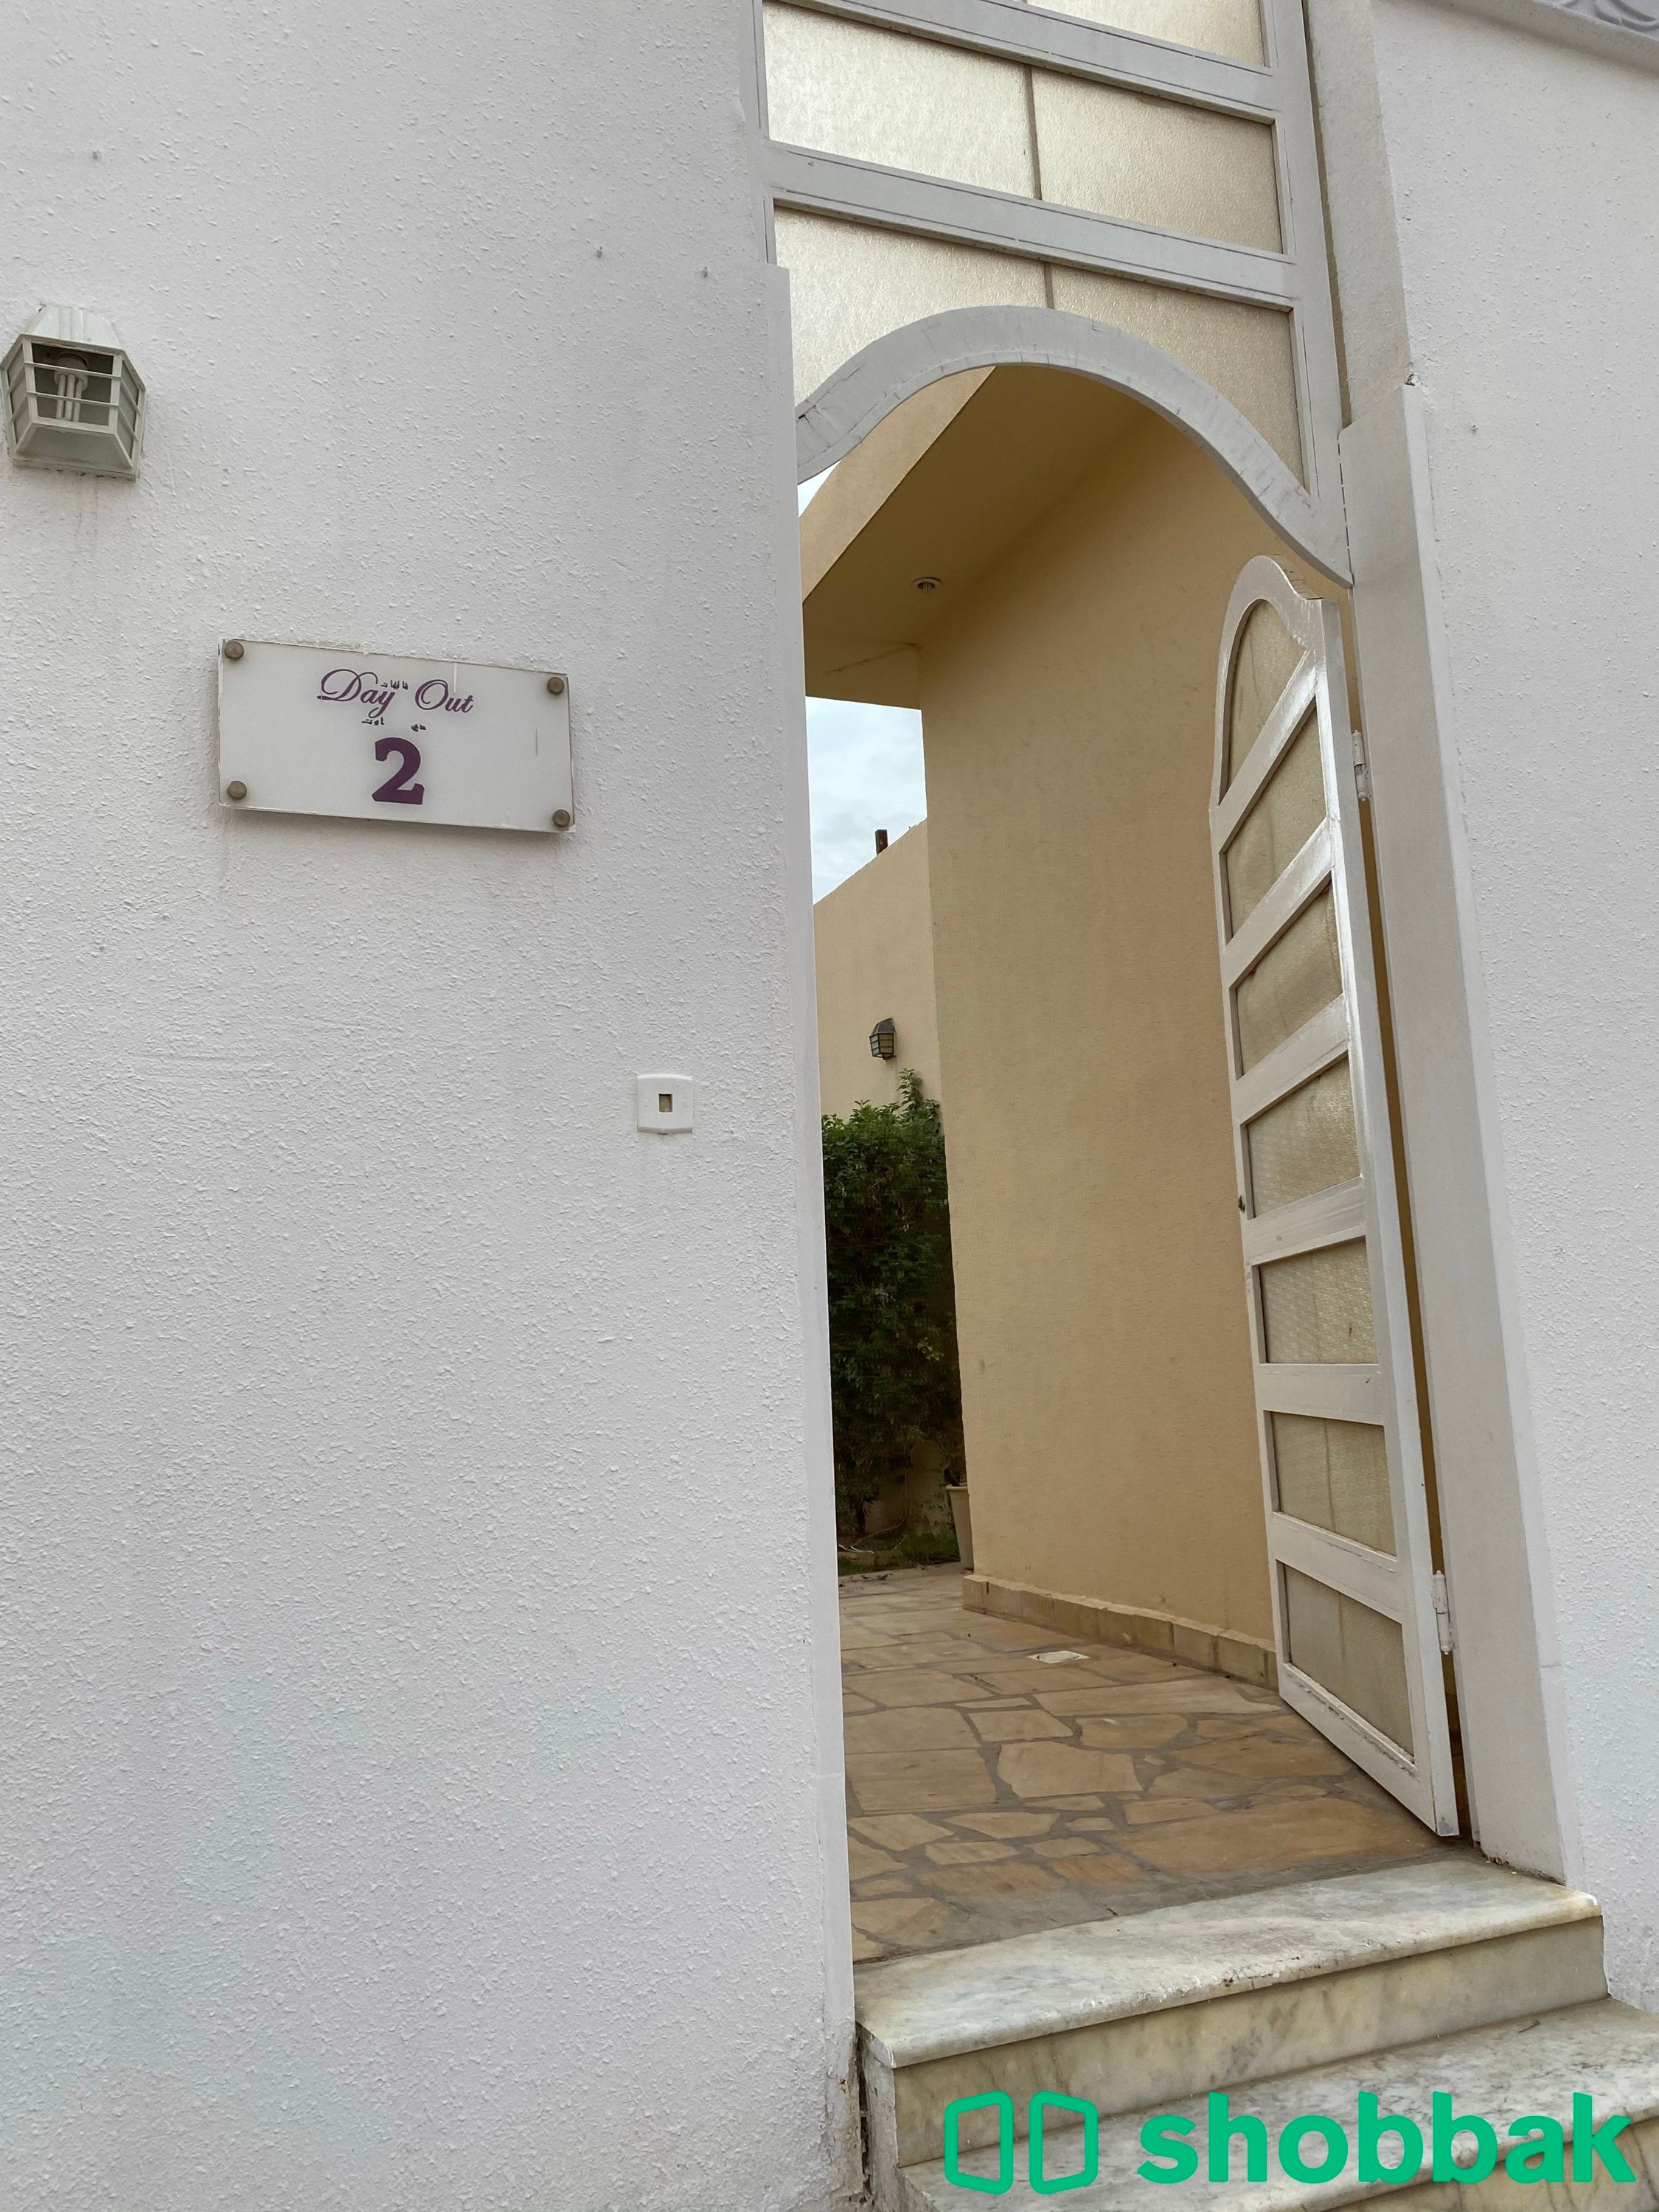 شاليهات دي اوت رقم ٢للإيجار | في حي العوالي Shobbak Saudi Arabia